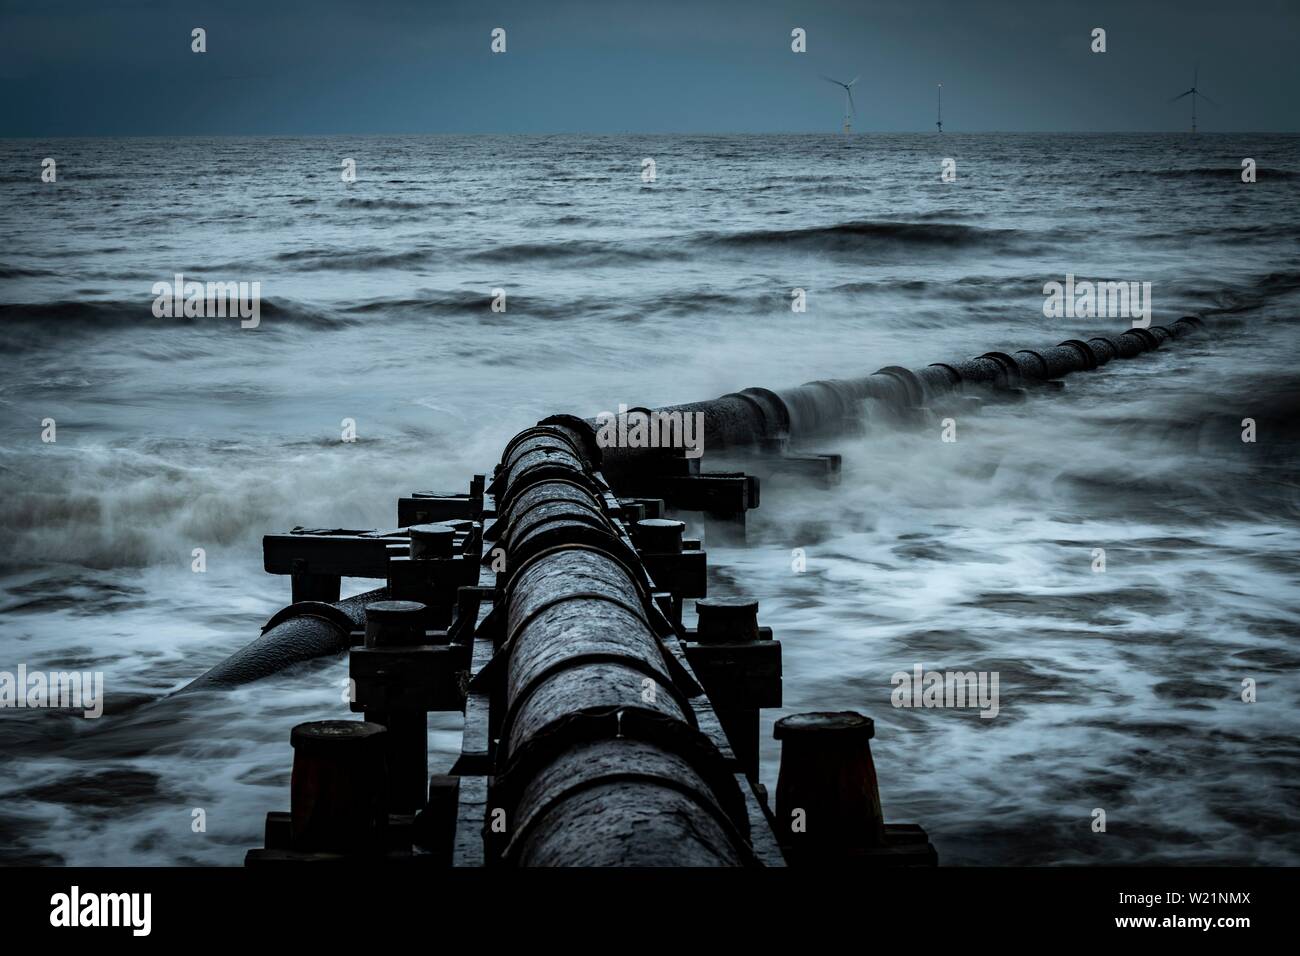 Tubo de hierro oxidadas, tubo de aguas residuales en el mar navegar bajo un cielo oscuro, Blyth, Northumberland, Gran Bretaña Foto de stock